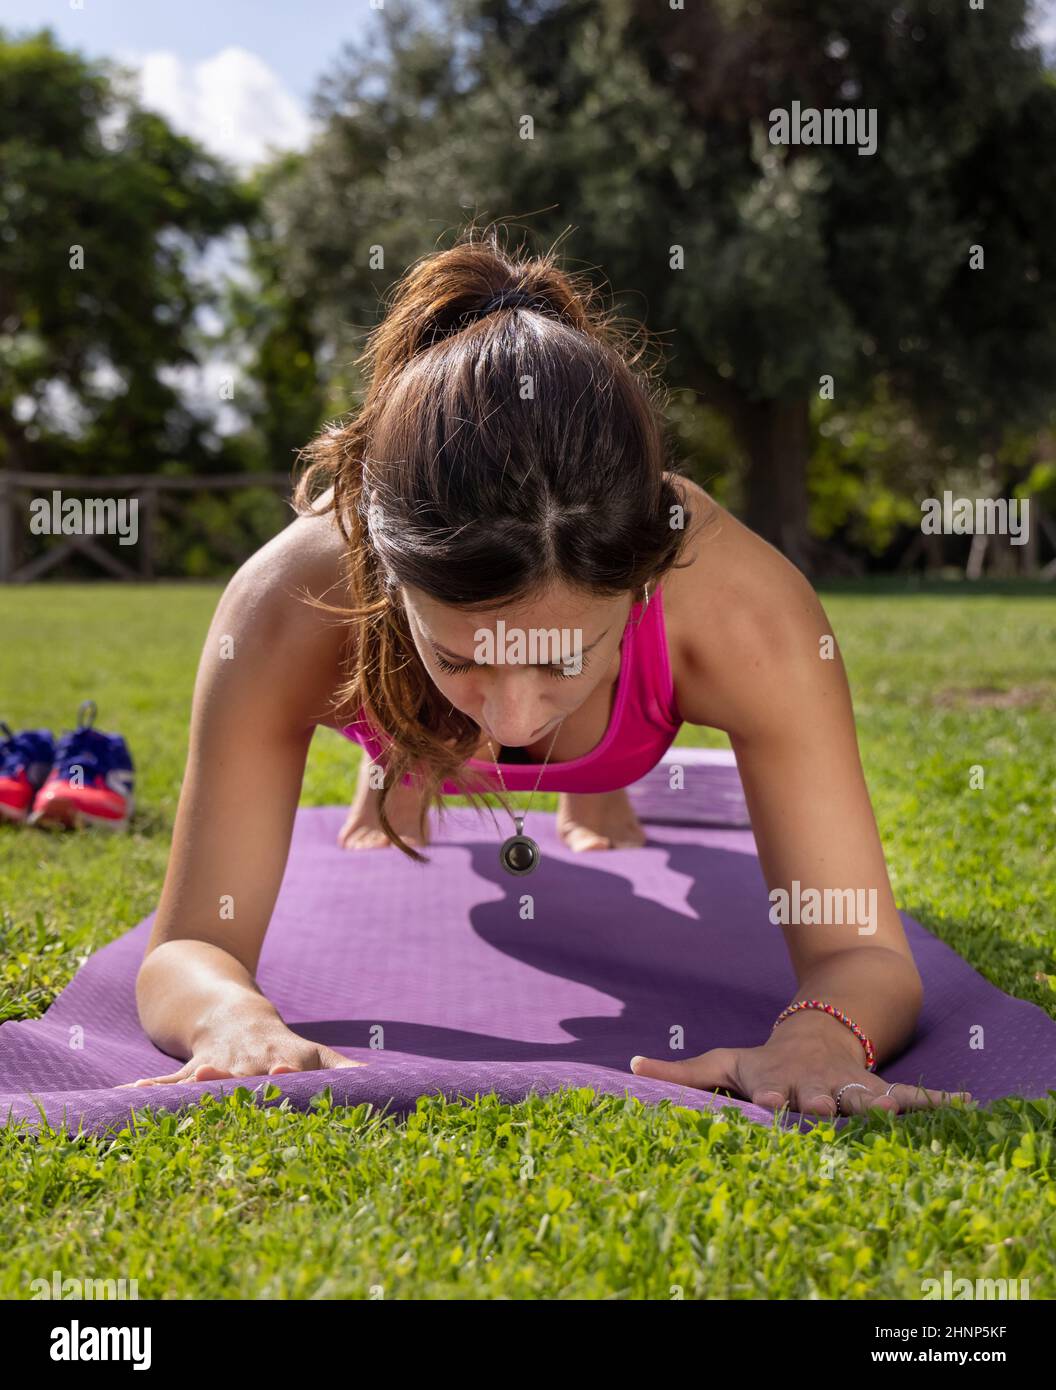 Junge konzentrierte Frau in Plankenstellung auf Matte in einem Park an einem Sommertag Stockfoto